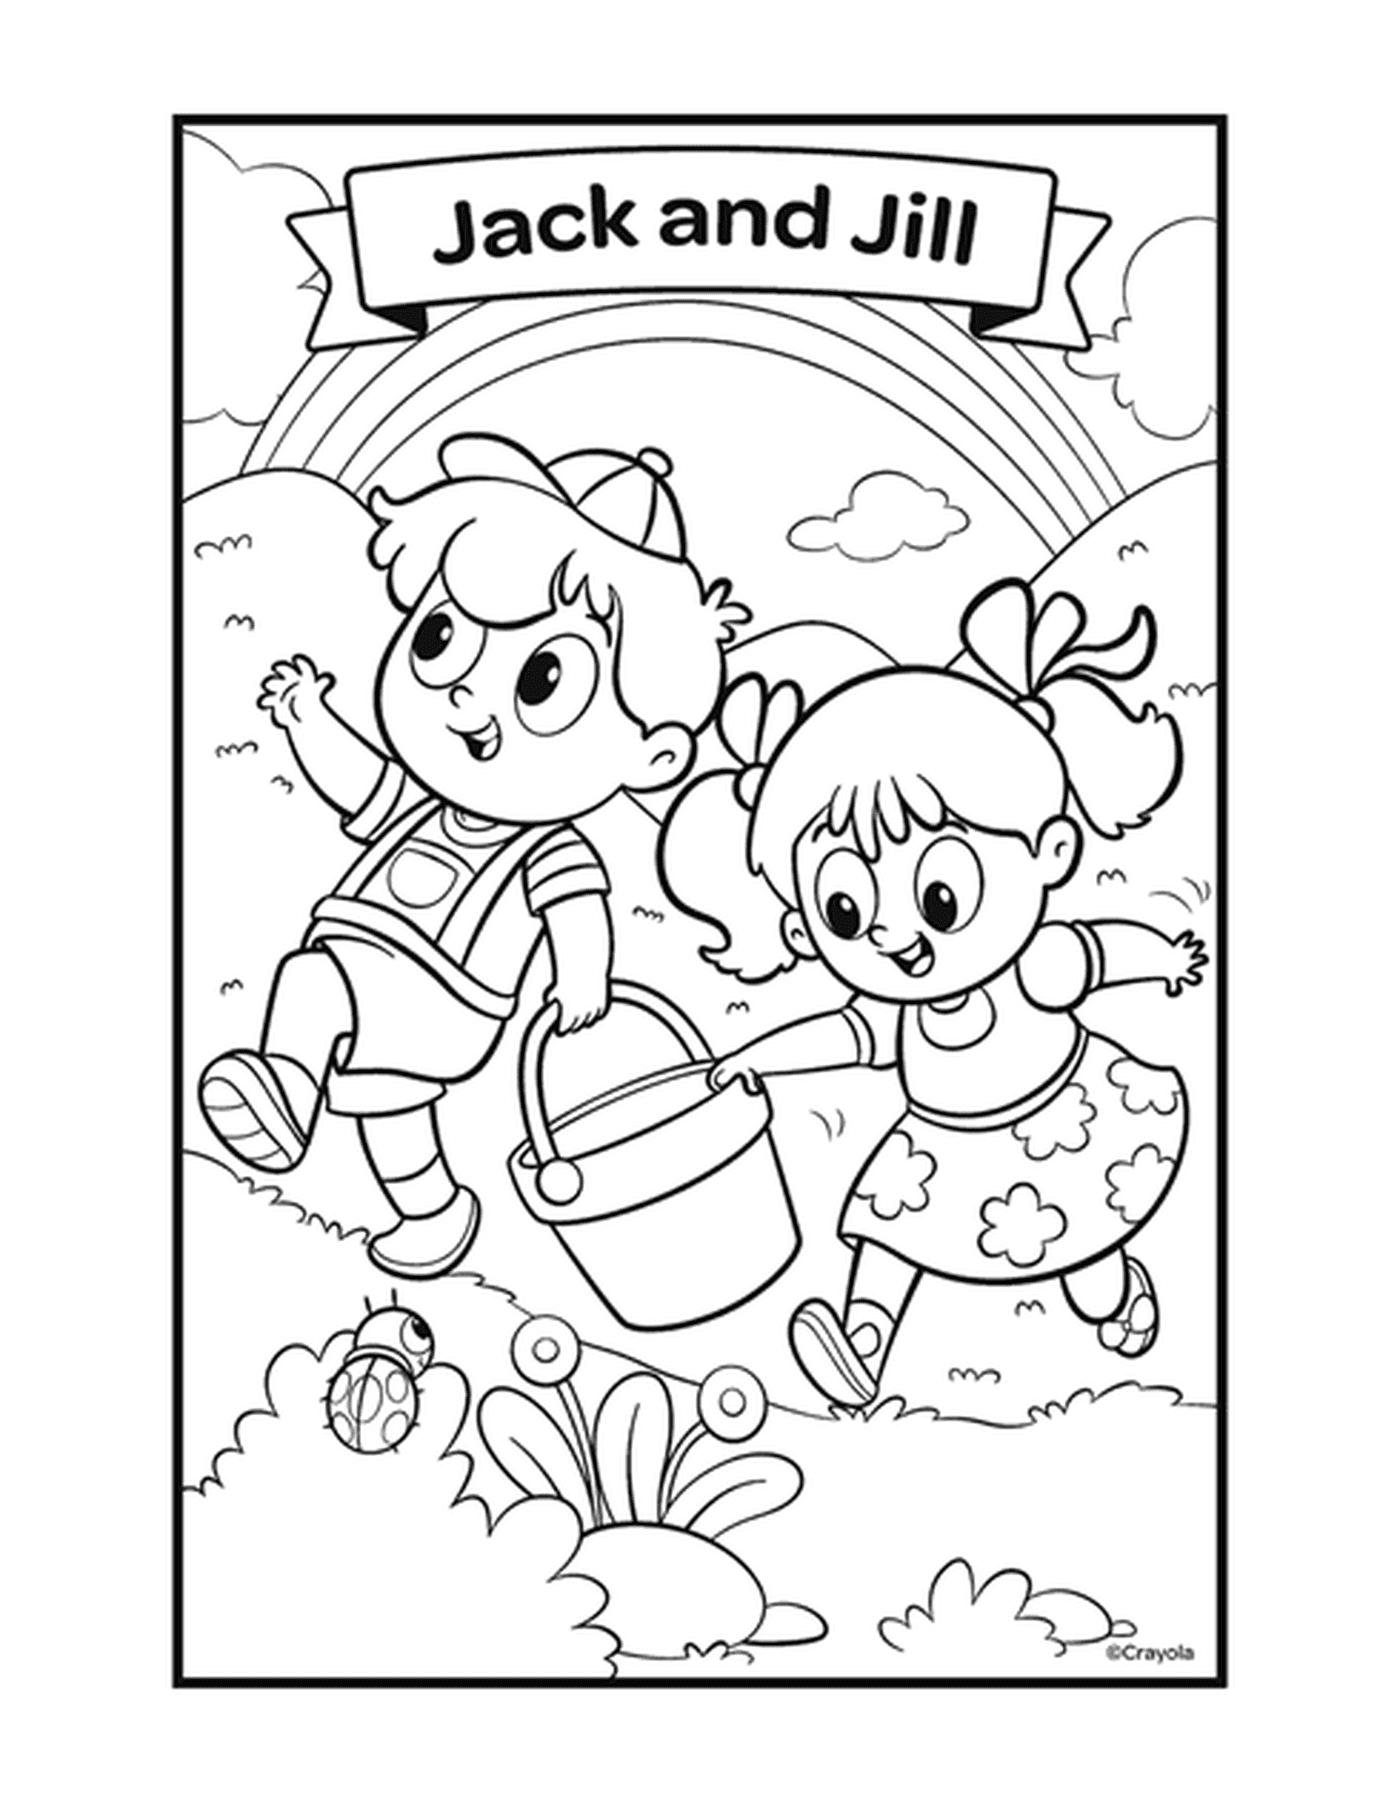  Jack e Jill con due bambini che giocano con un secchio 